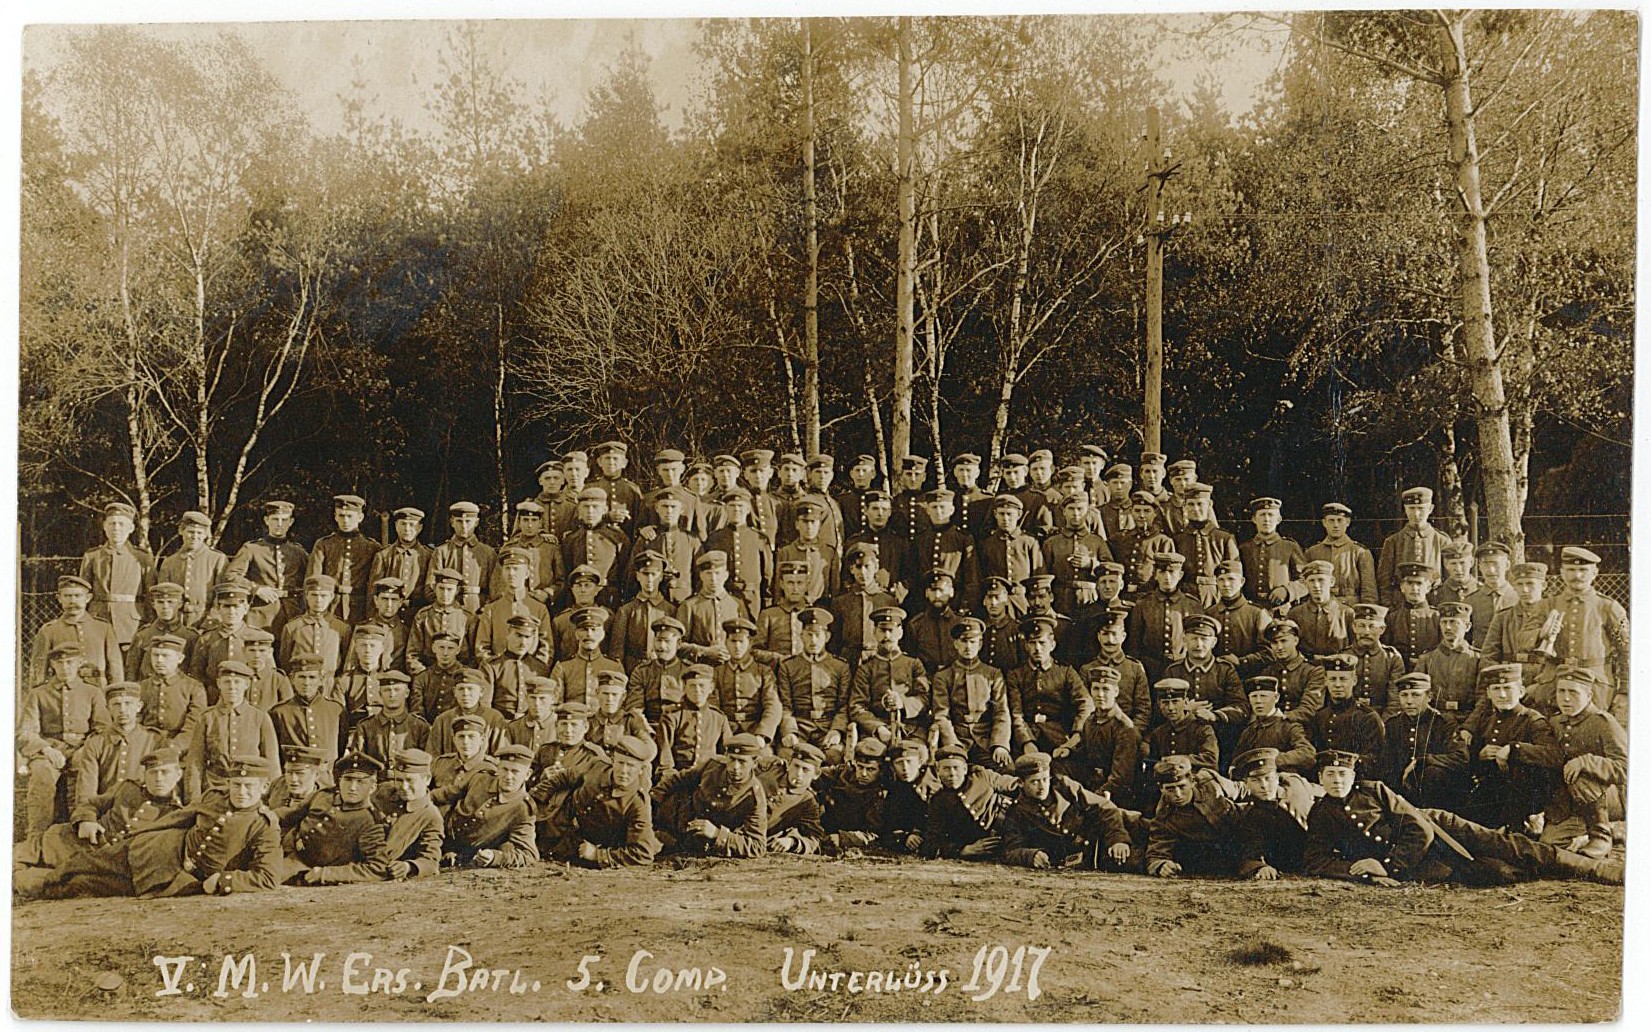 Postkarte mit Gruppenbild des "5. M.W. Ers. Batl. 5. Comp. Unterlüss 1917" (Museum Wolmirstedt RR-F)